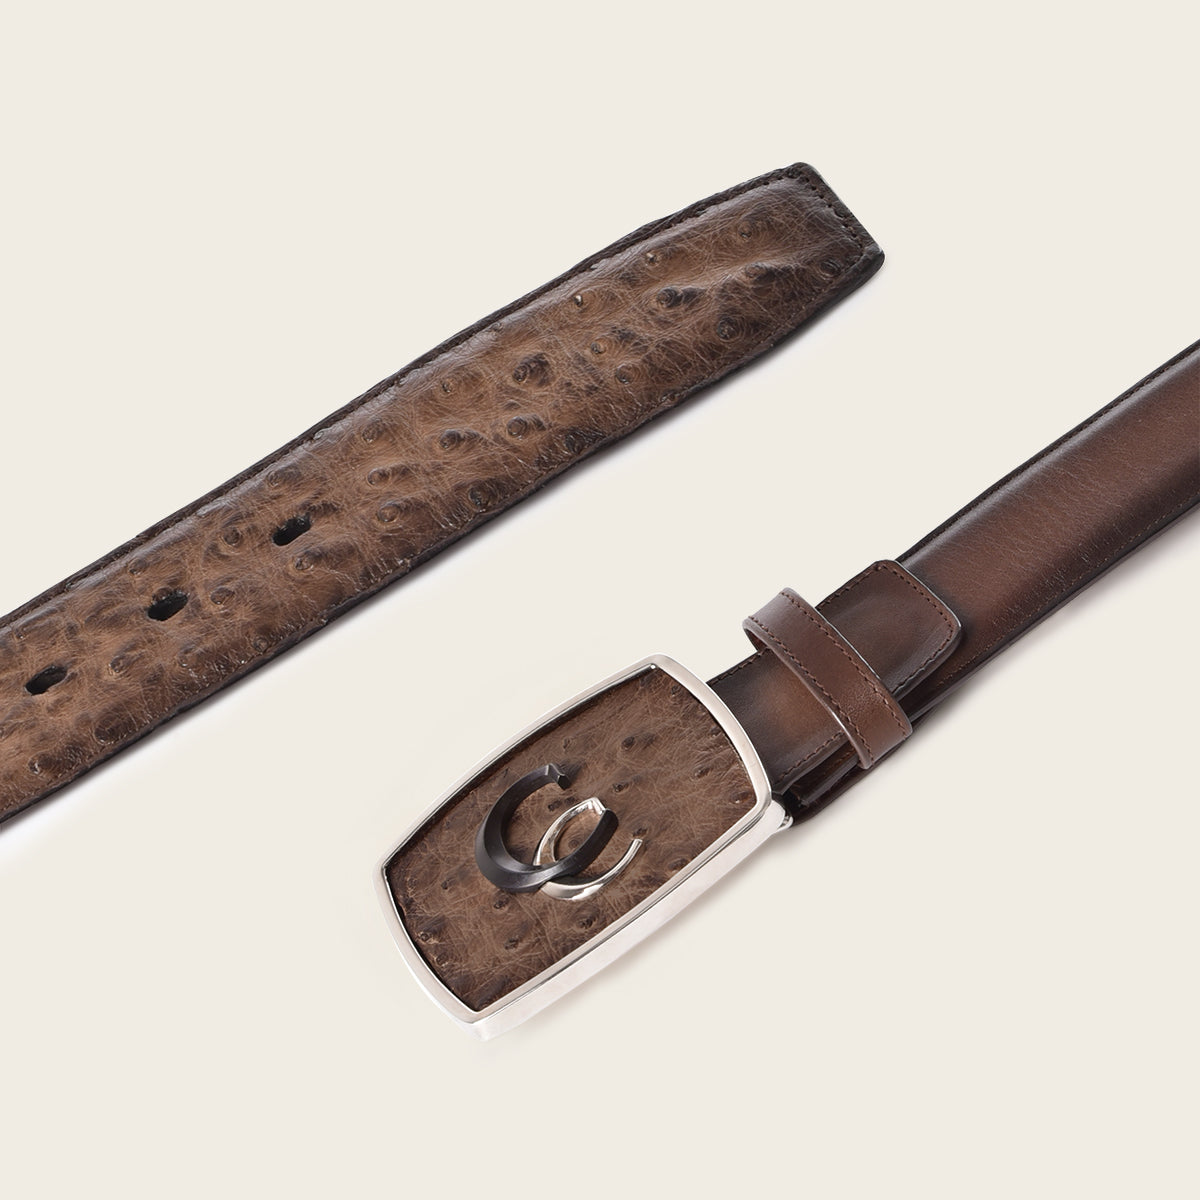 Cinturón western de piel exótica color café pintado a mano con doble inserción metálica